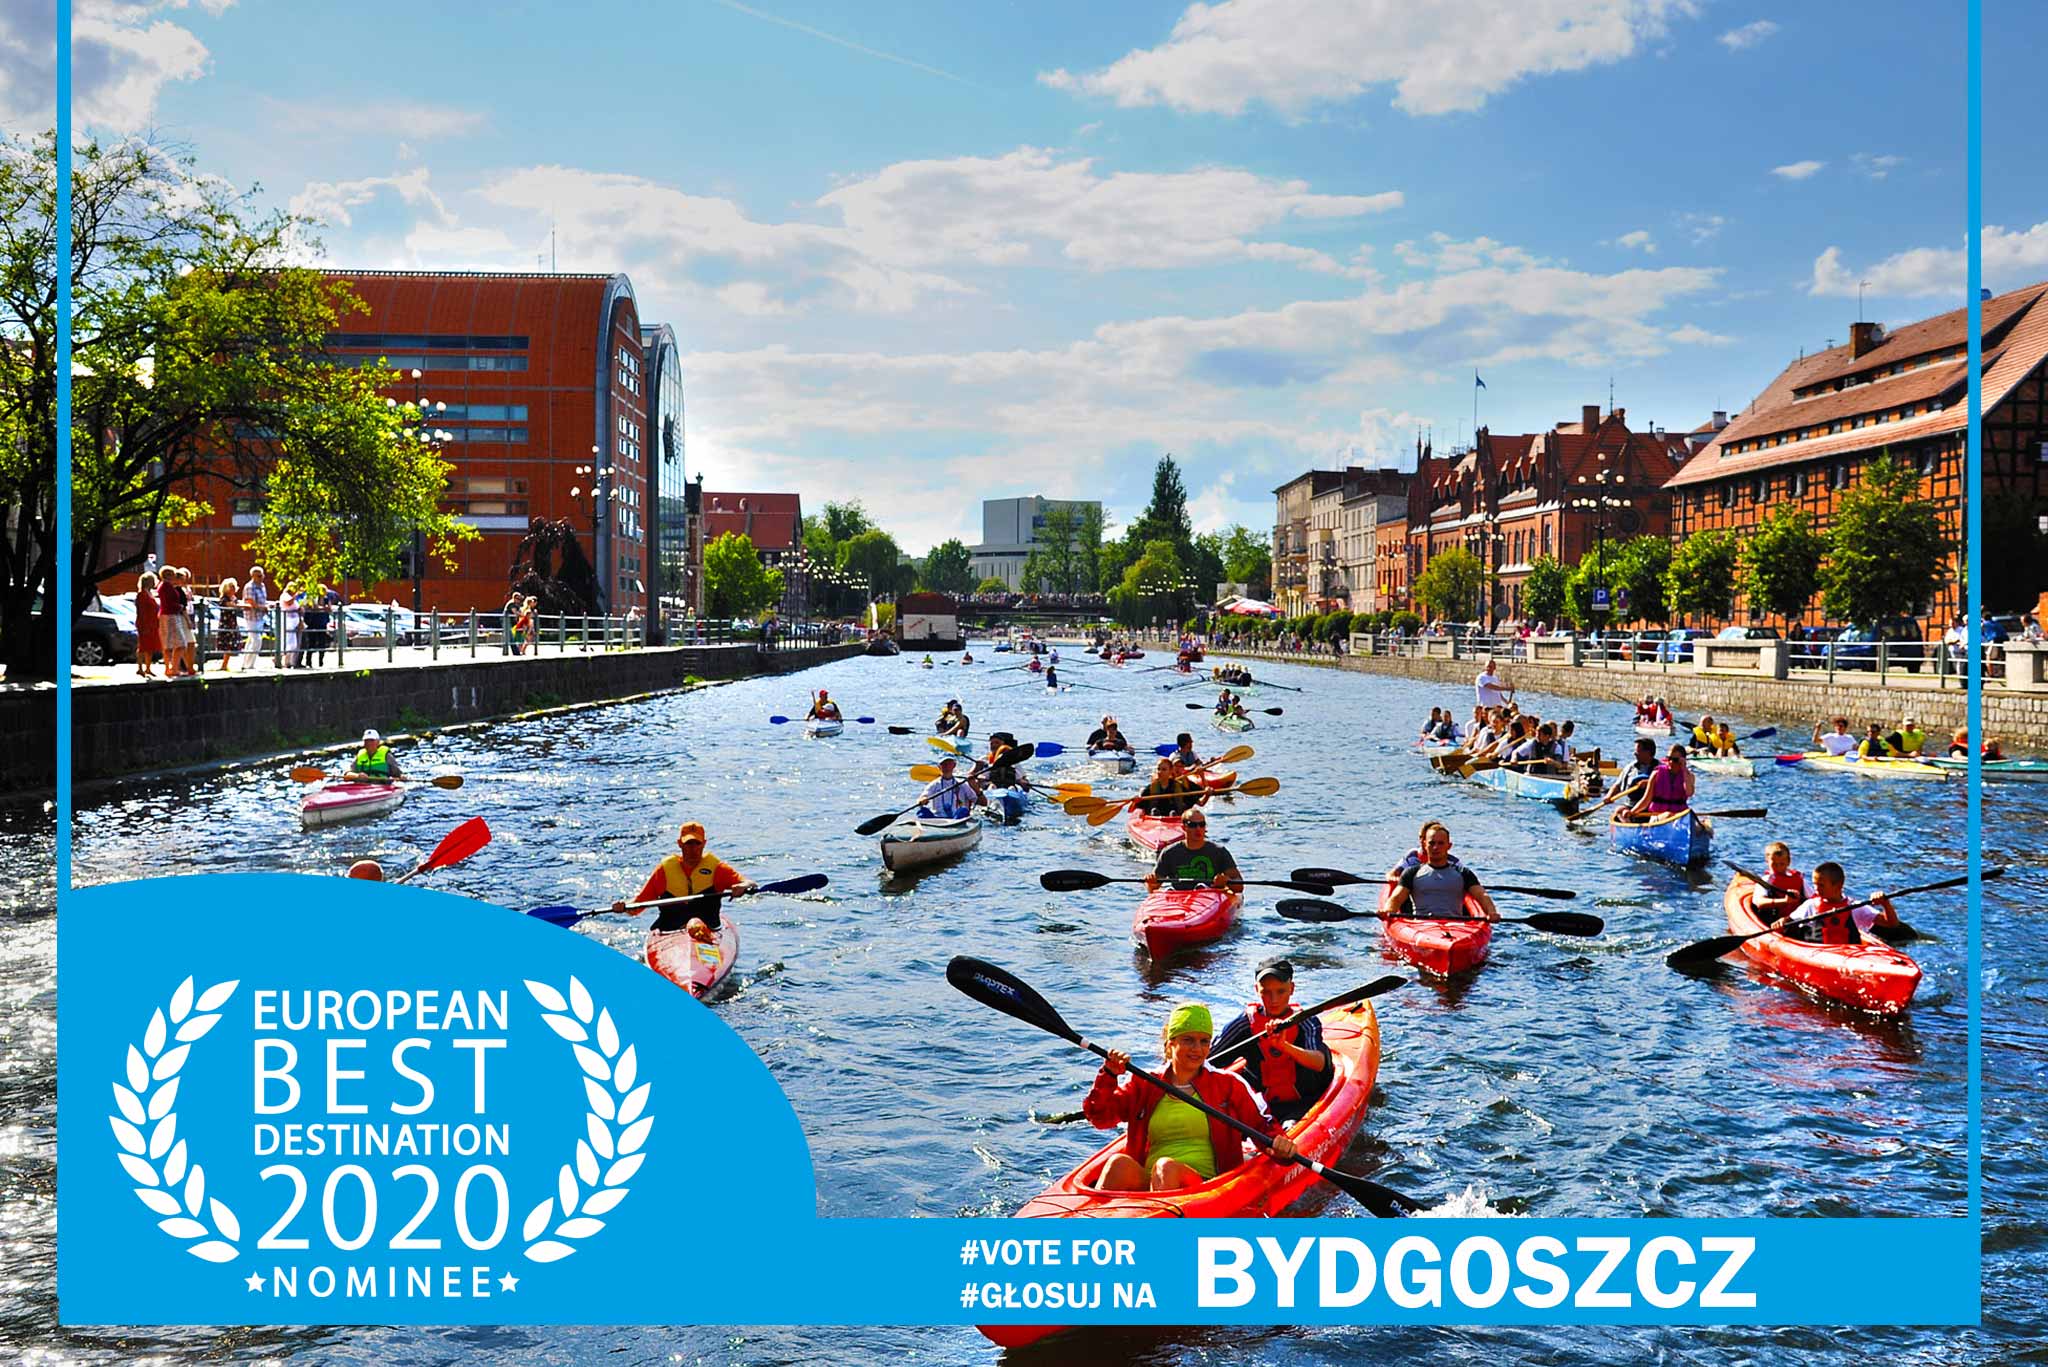 Bydgoszcz | European Best Destination 2020